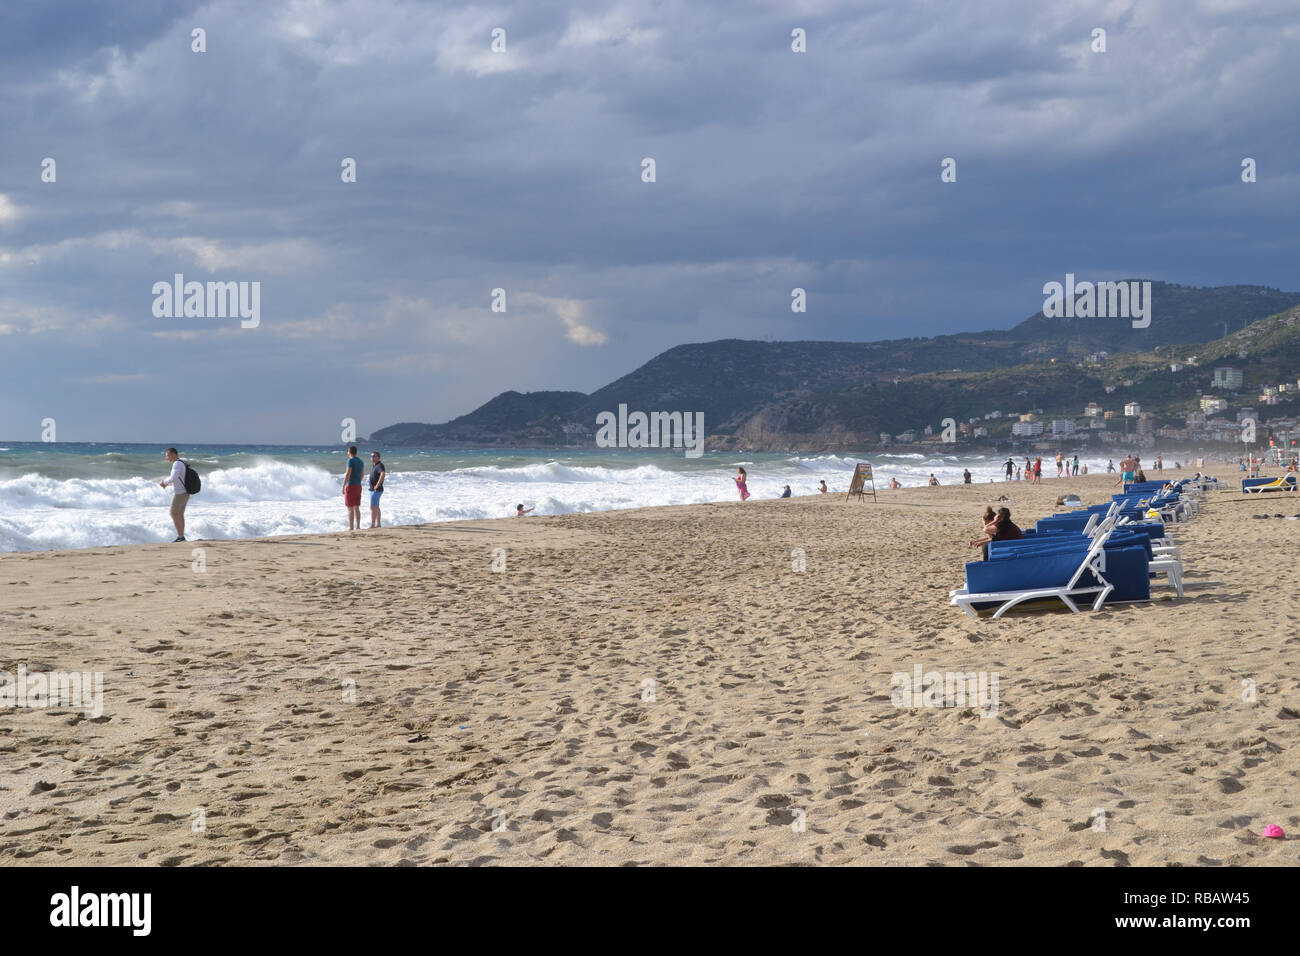 Alanya Turchia ottobre 25, 2018: giorno nuvoloso nella spiaggia di Cleopatra, persone che guardano il mare Foto Stock